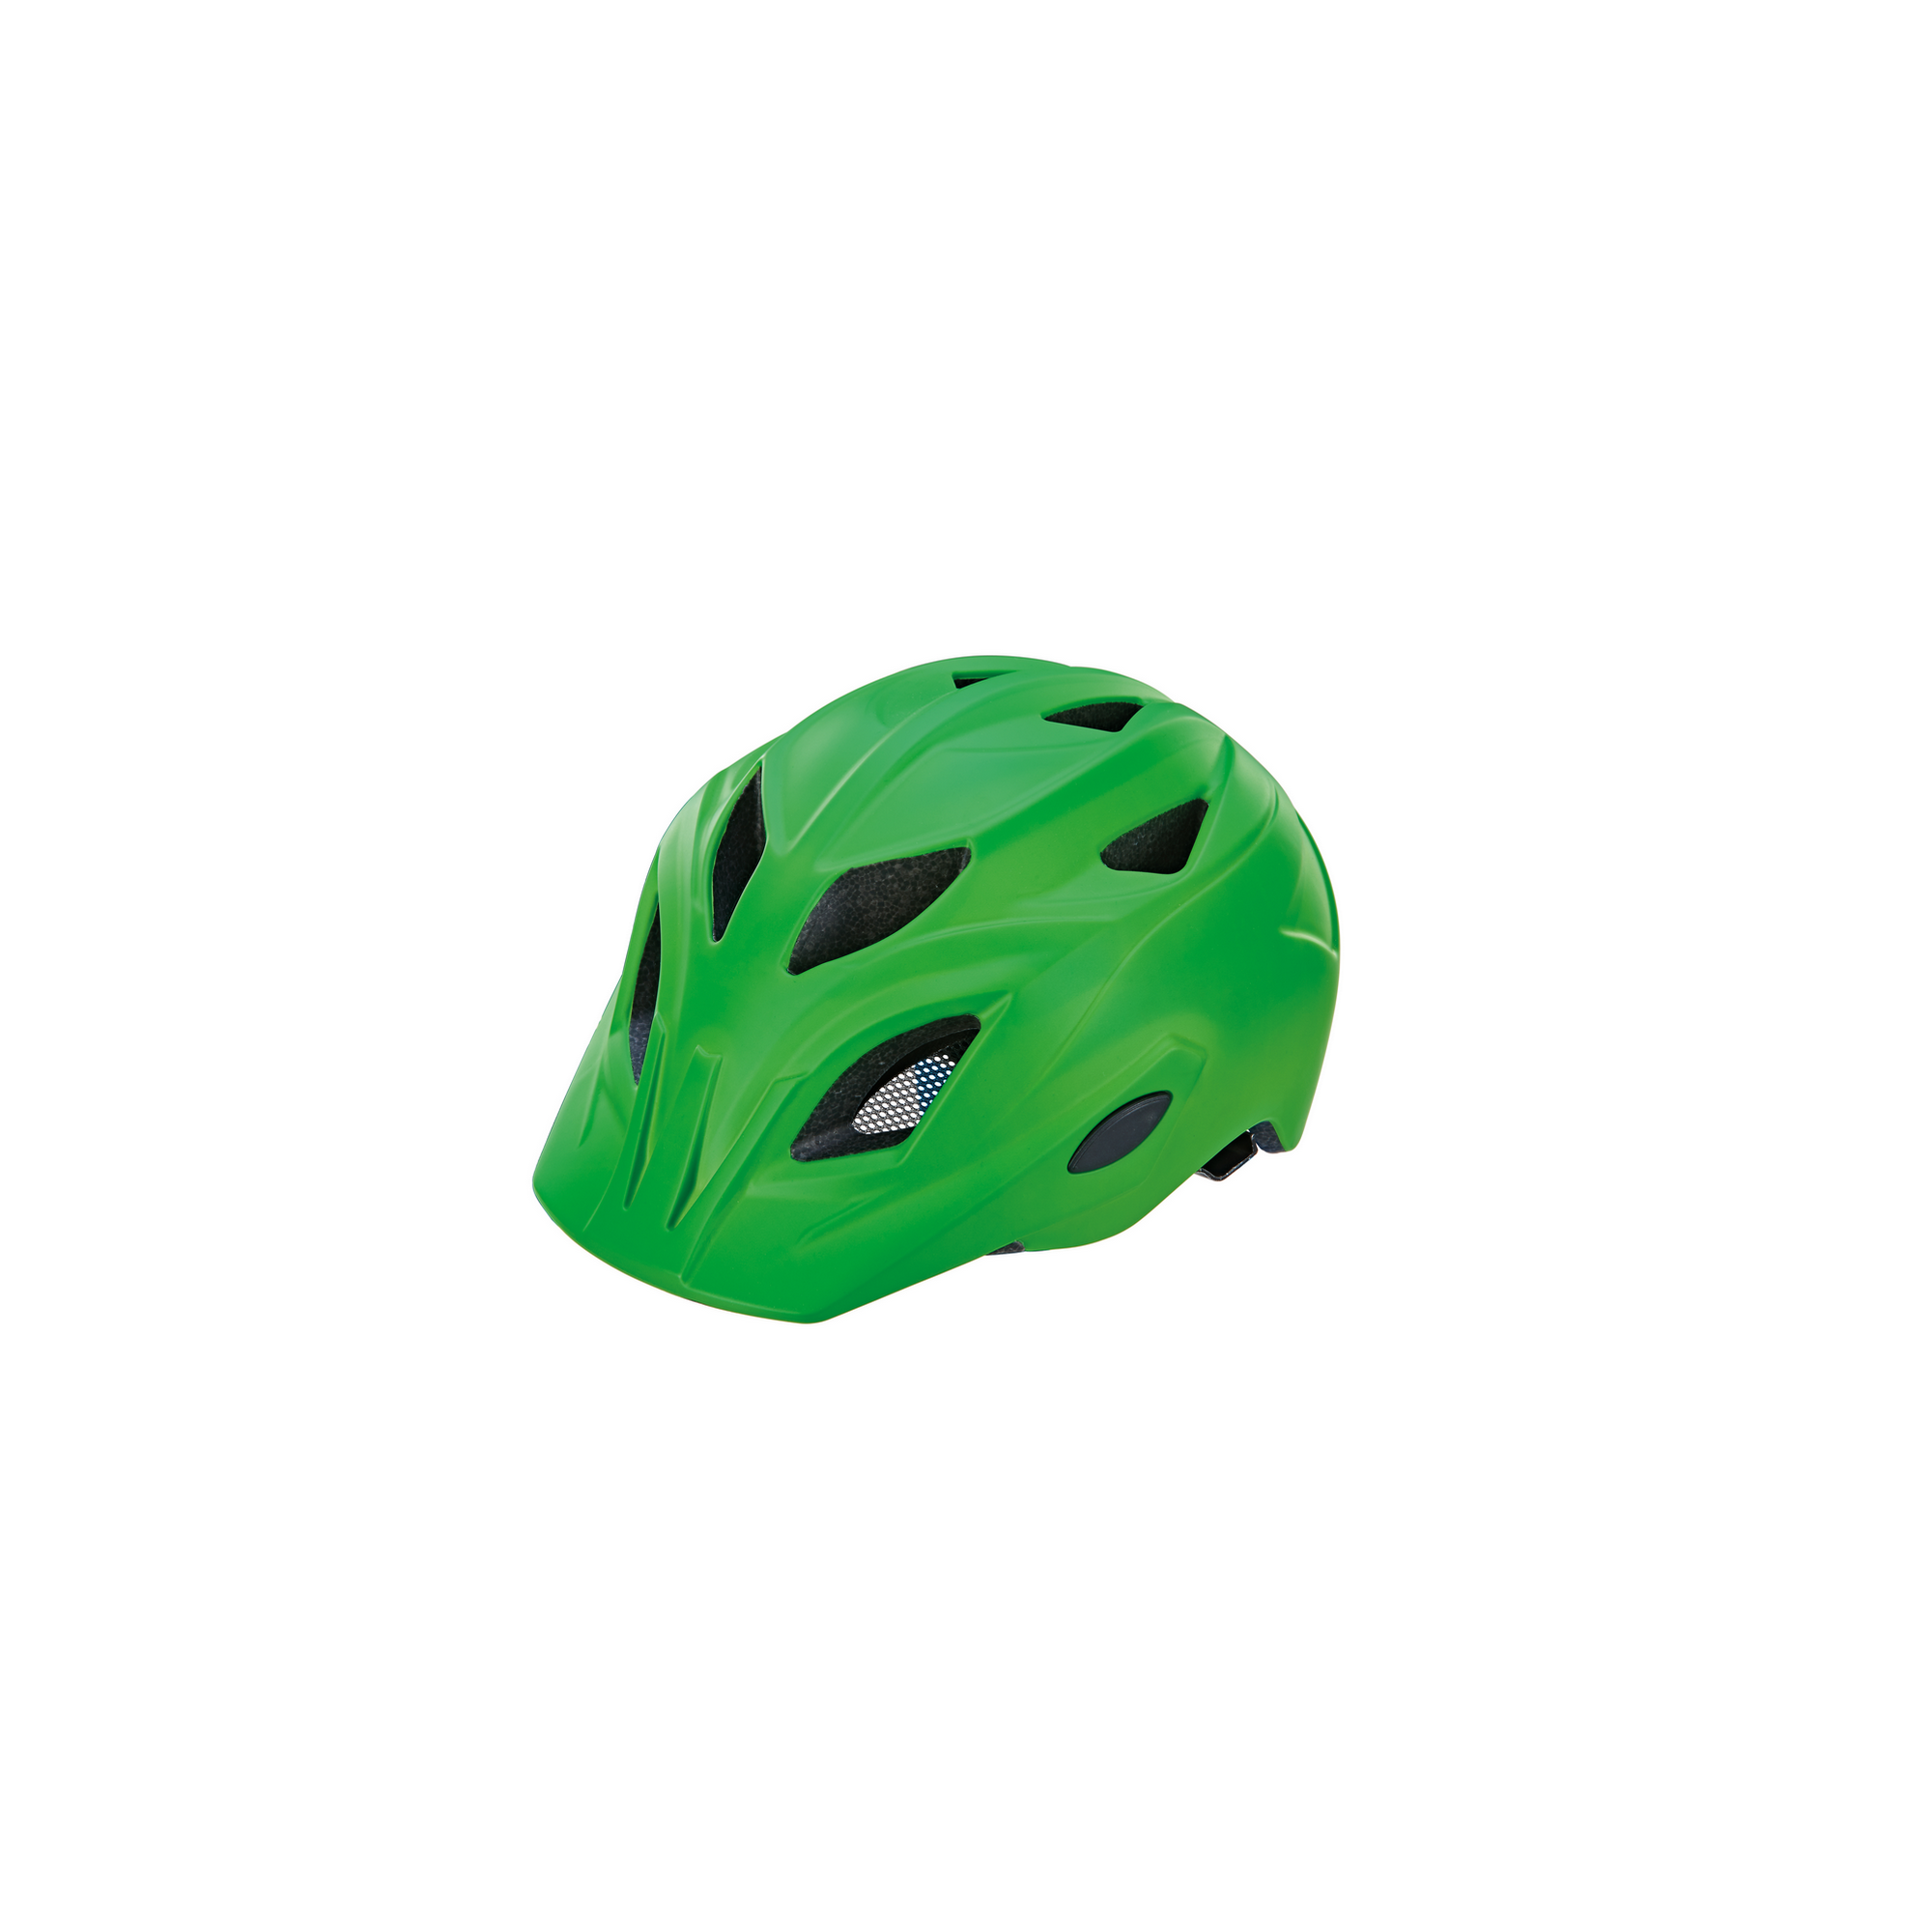 Fahrradhelm grün 52-56 cm + product picture